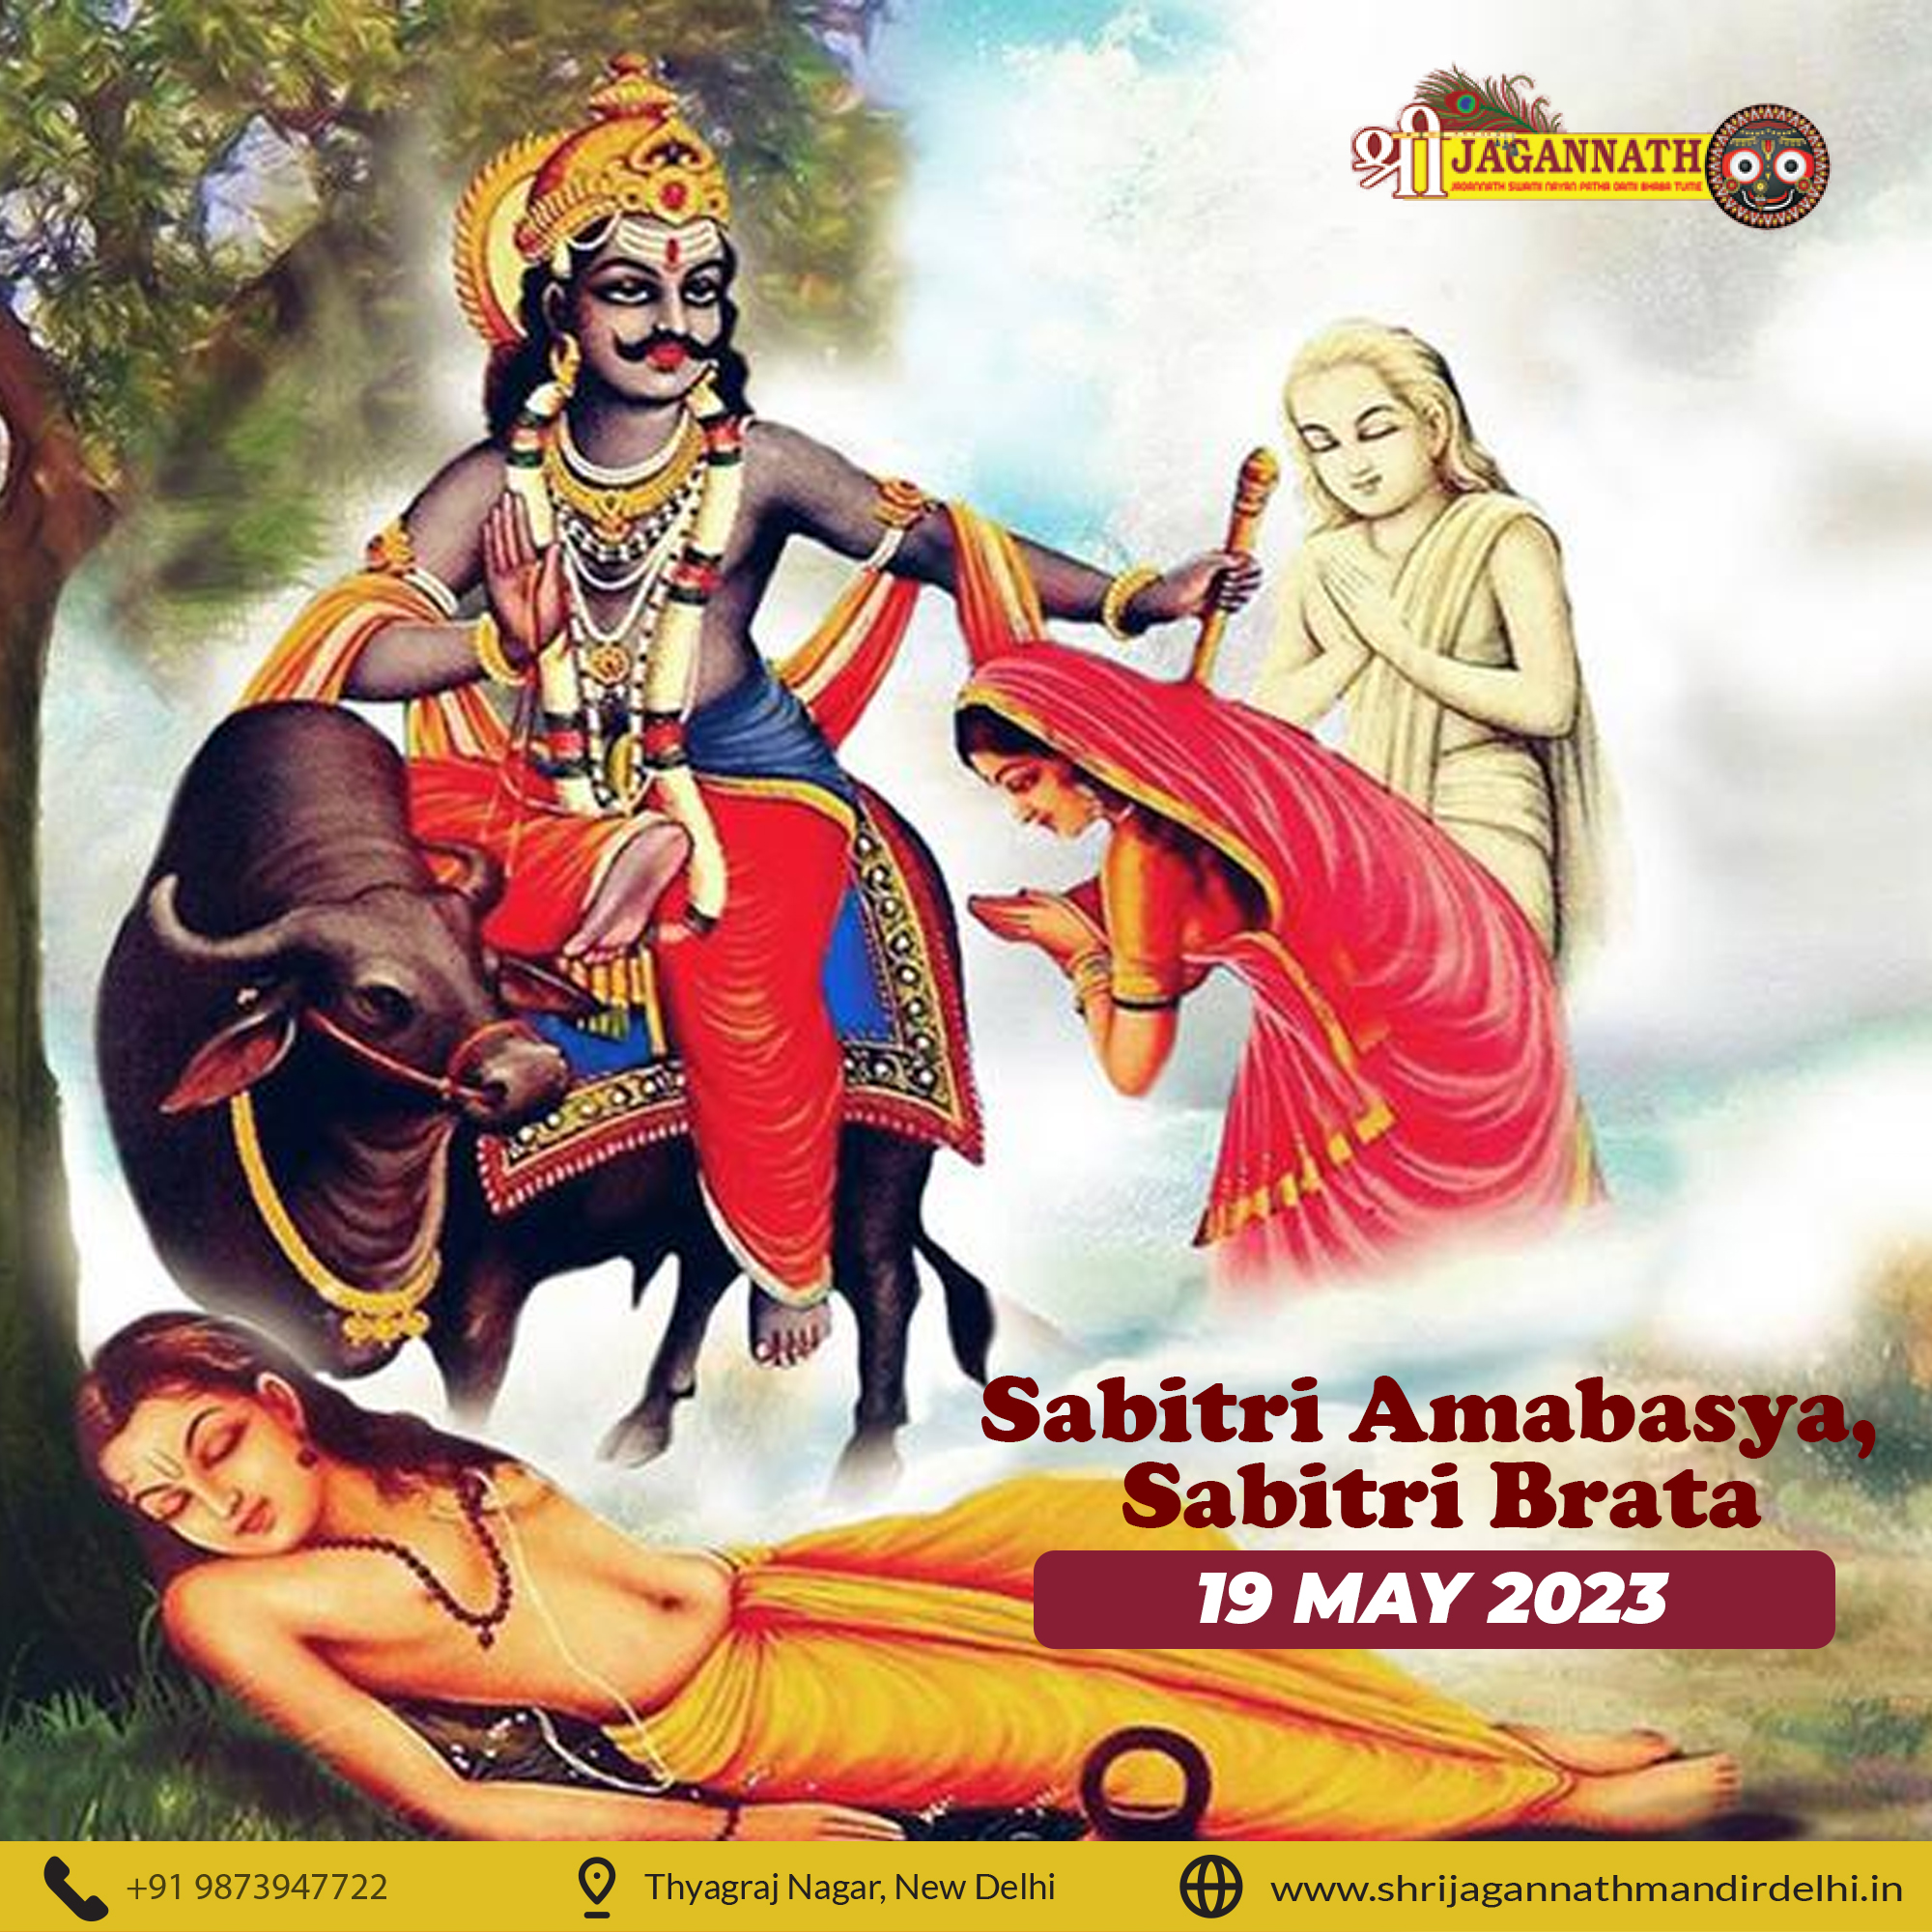 Sabitri Amabasya, Sabitri Brata Shri Jagannath Mandir